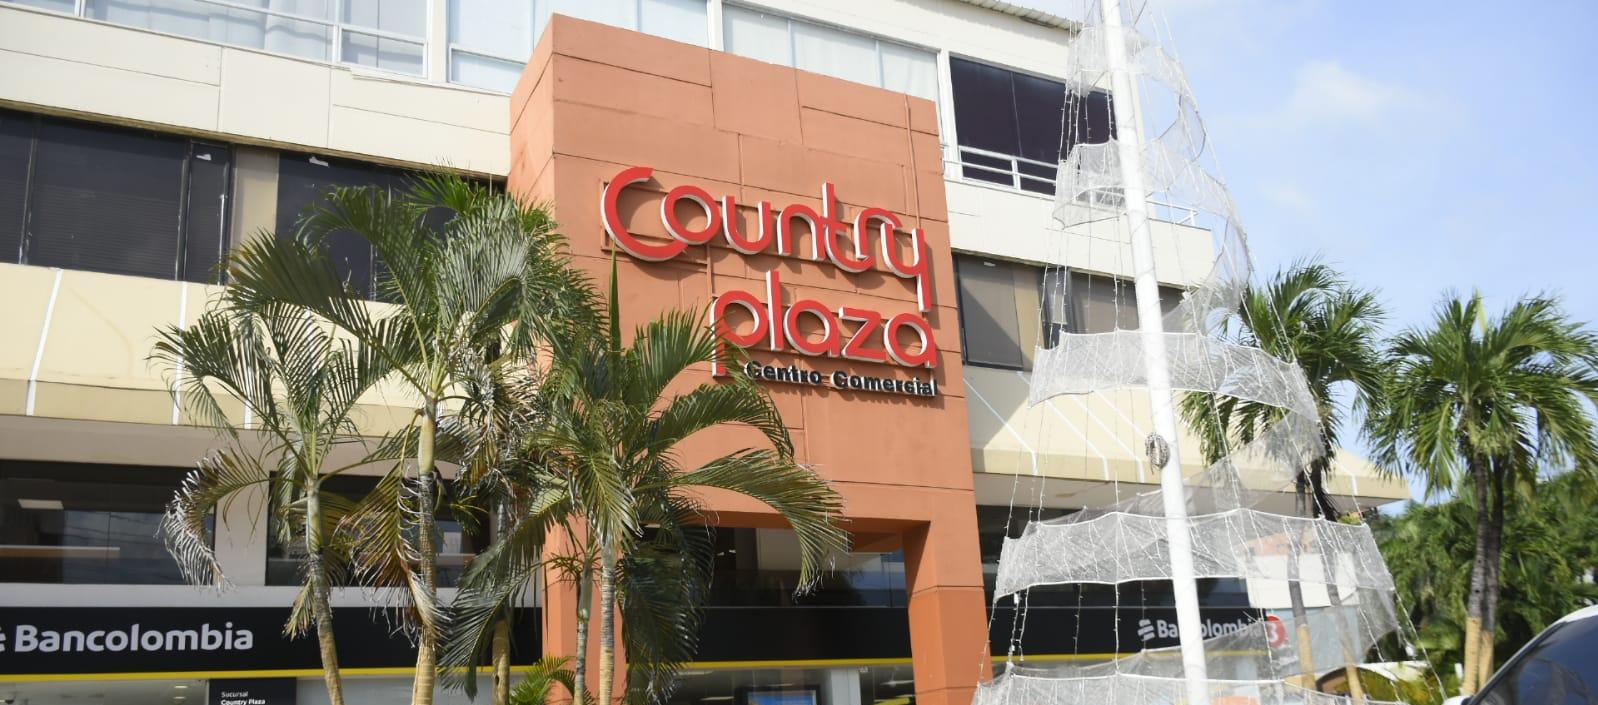 Centro comercial Country Plaza